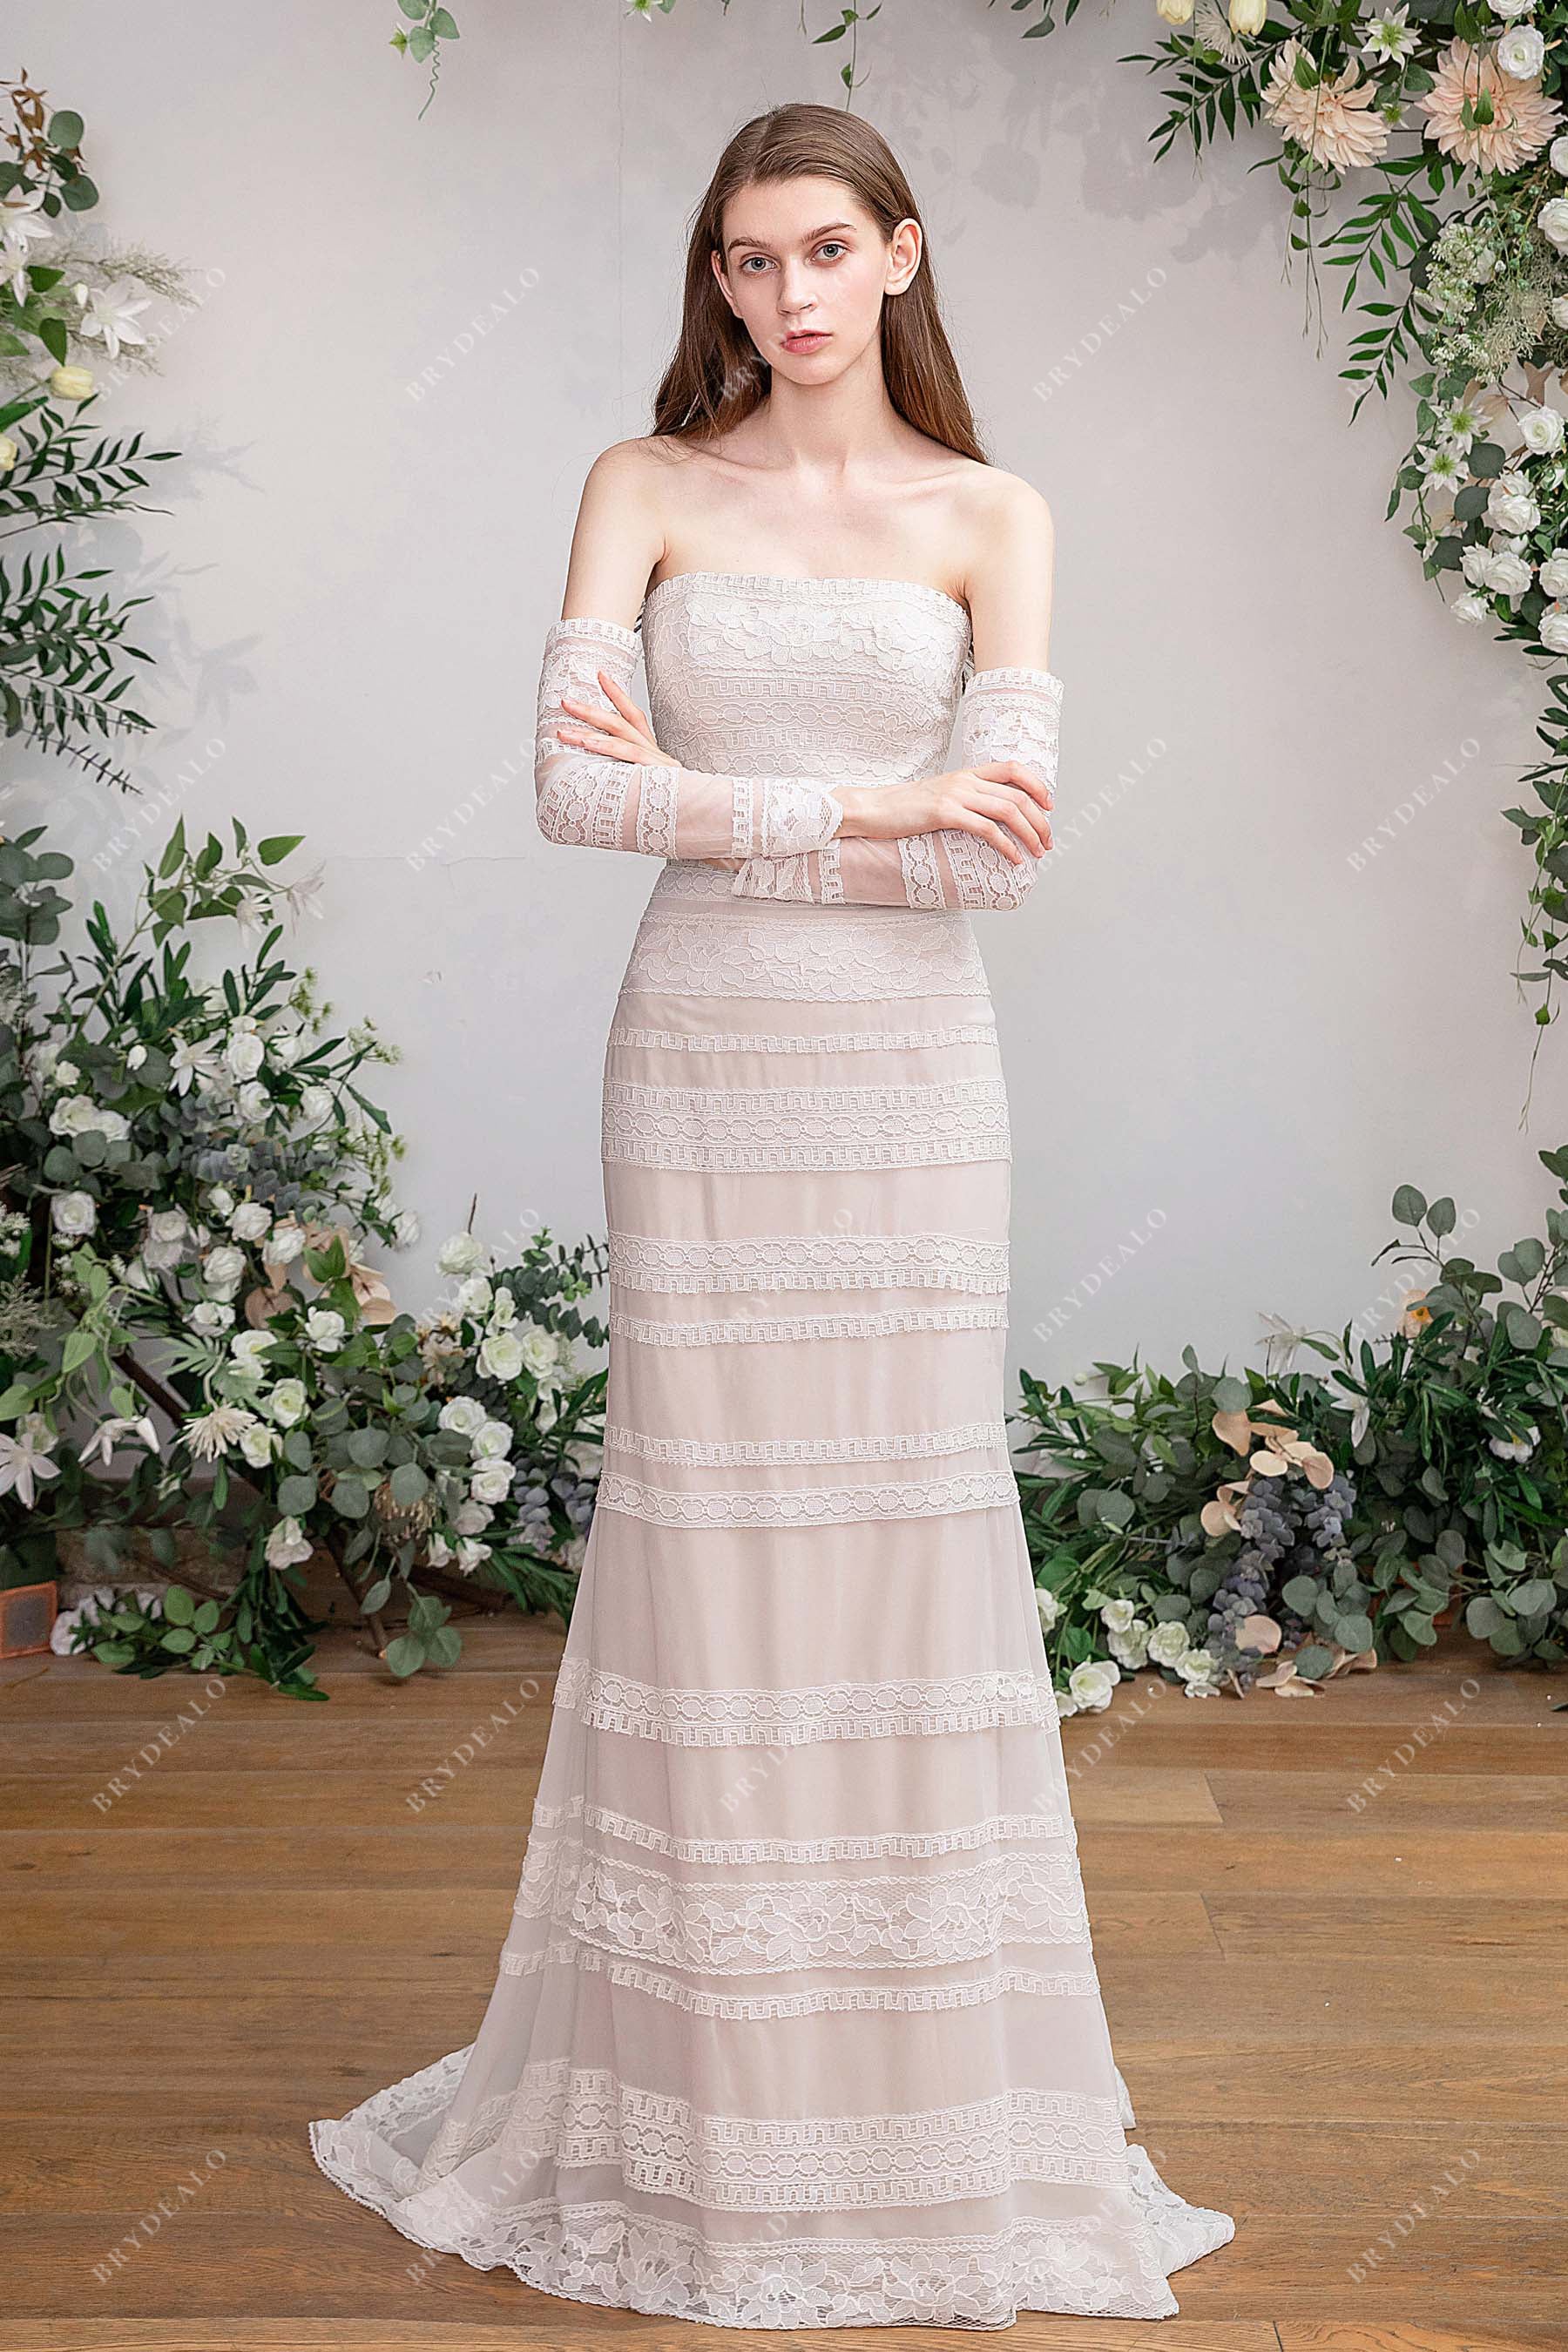 Sweetheart Wedding Dress Sleeves | Wedding Dress Detachable Sleeves -  Wedding Dresses - Aliexpress